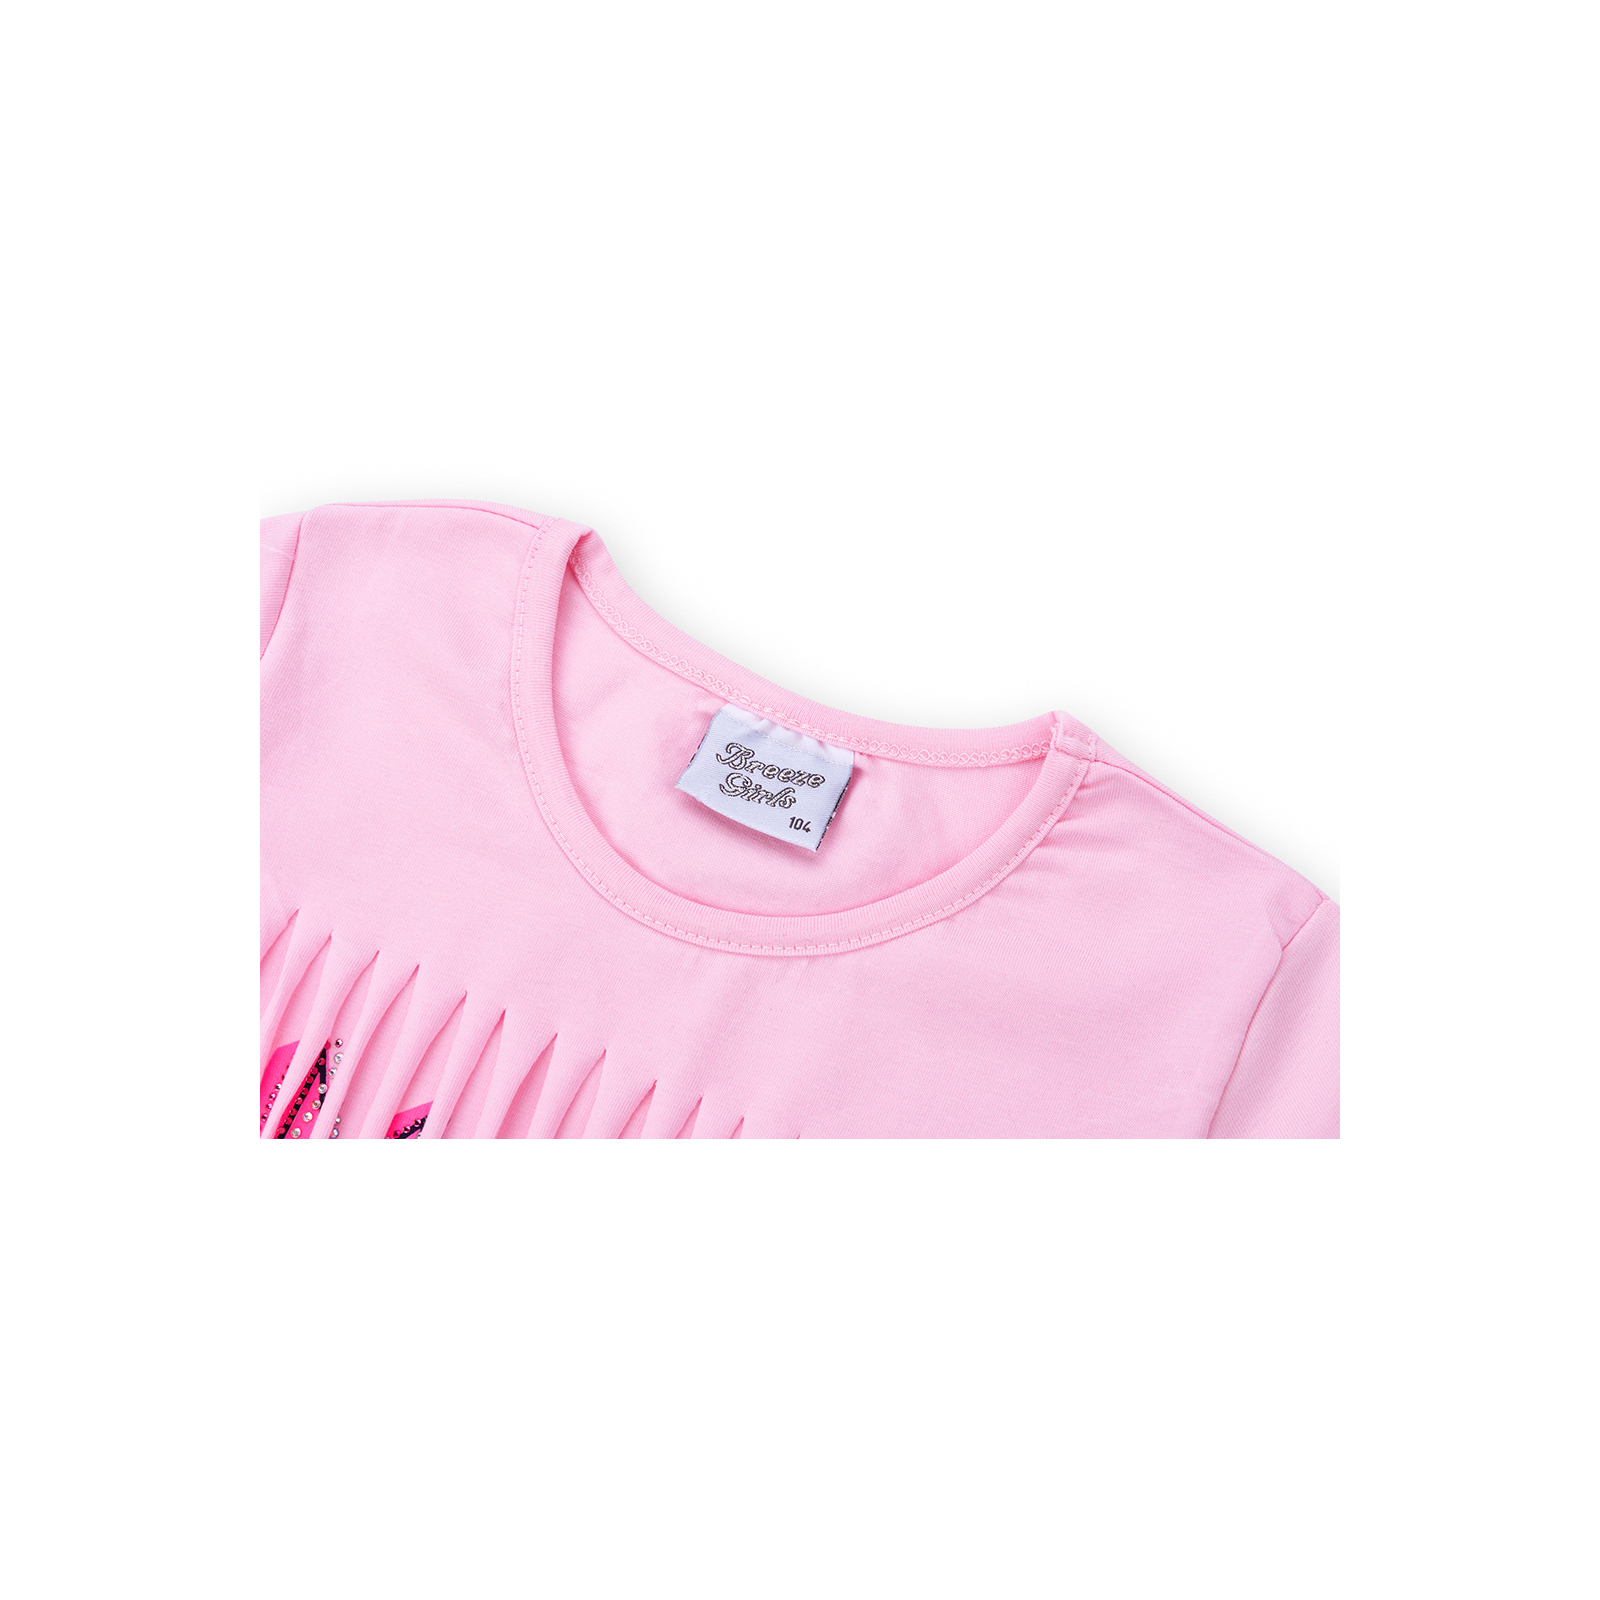 Набор детской одежды Breeze футболка со звездочками с шортами (9036-104G-pink) изображение 4